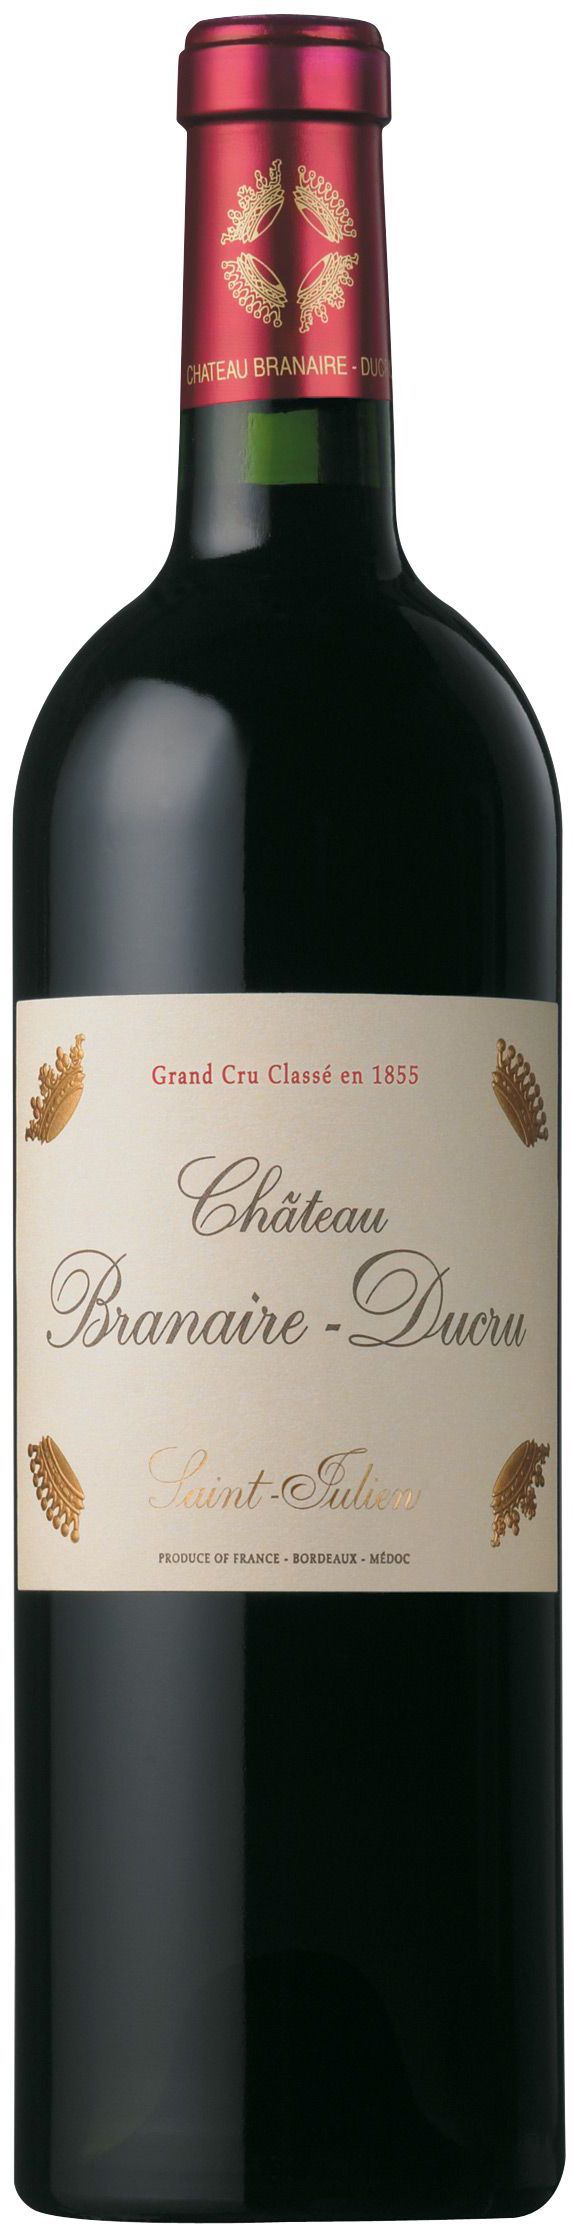 Chateau Branaire-Ducru, Grand Cru Classe, 2004